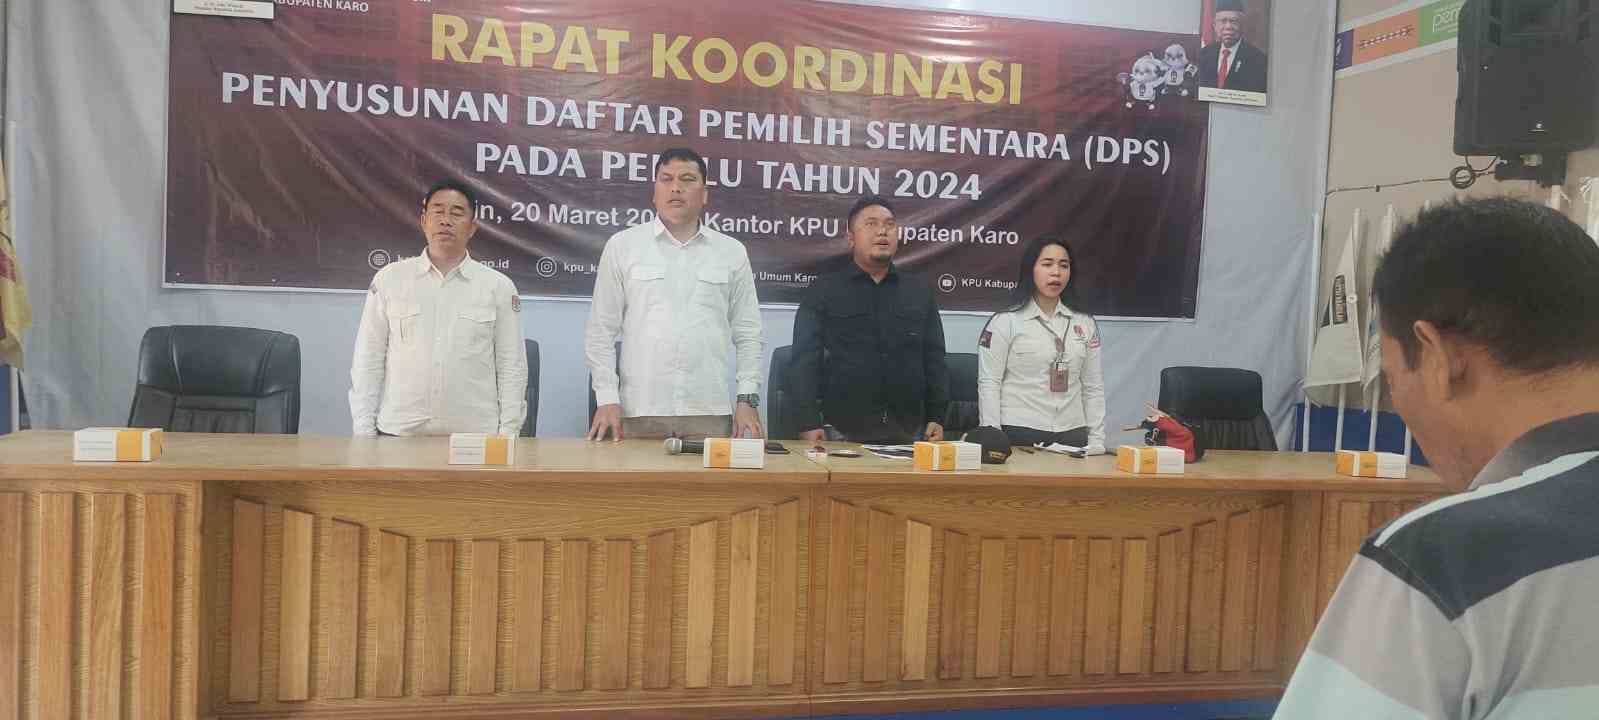 KPU Karo Gelar Rapat Koordinasi Daftar Pemilih Sementara Pada Pemilu Tahun 2024